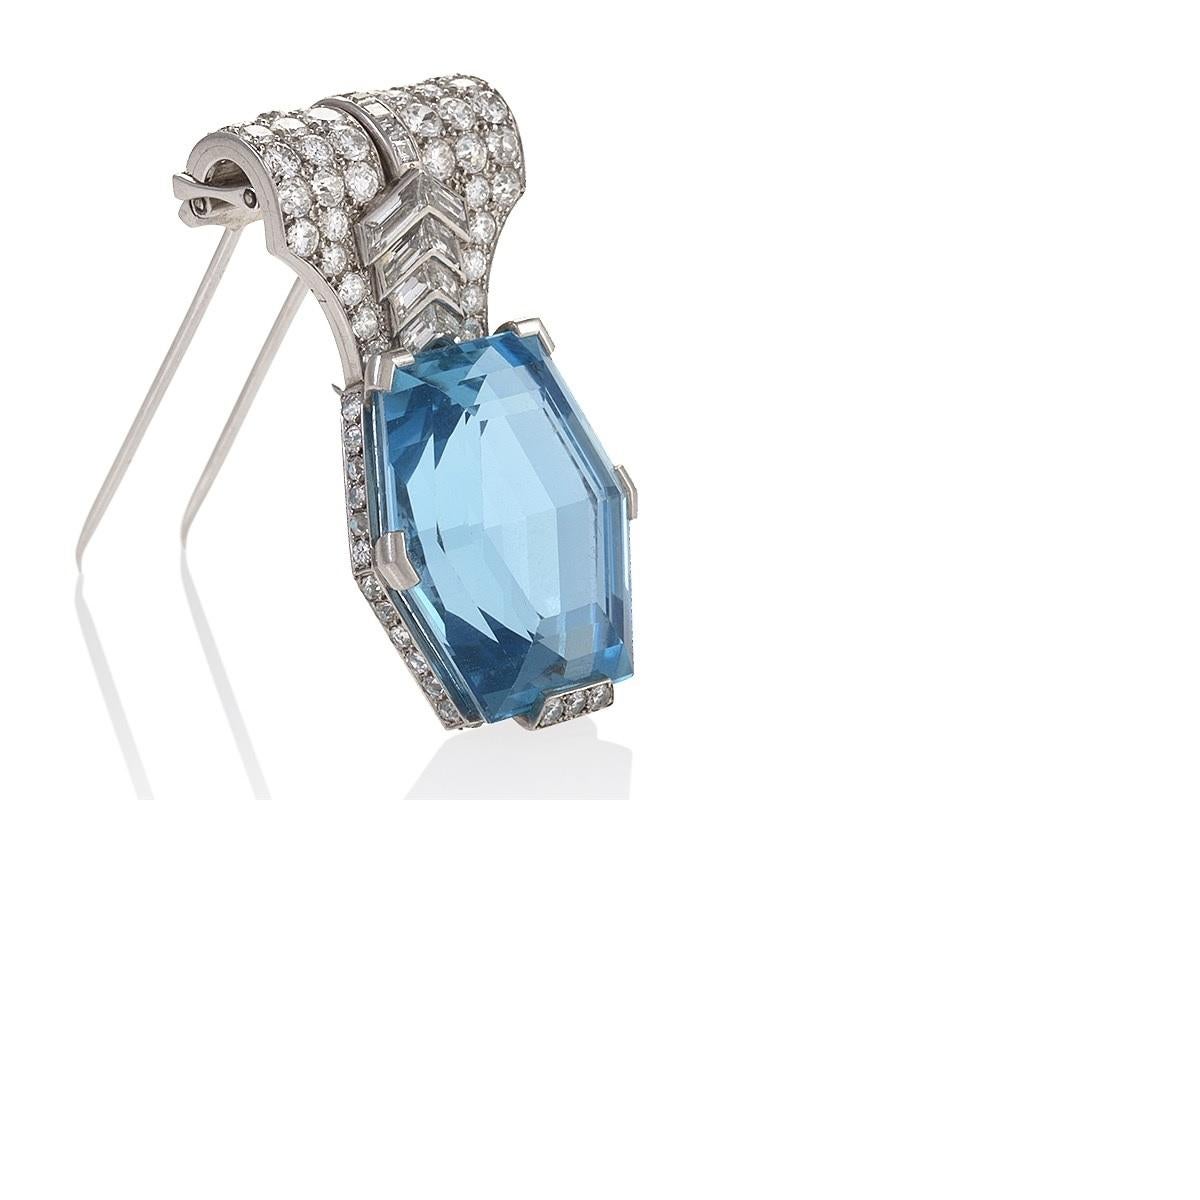 Cette rare broche en aigue-marine de Cartier Paris, avec ses chevrons de diamants audacieux, date des années 1930, lorsque les designers ont créé une série dynamique de bijoux mettant en vedette ces gemmes d'un bleu limpide provenant du Brésil.